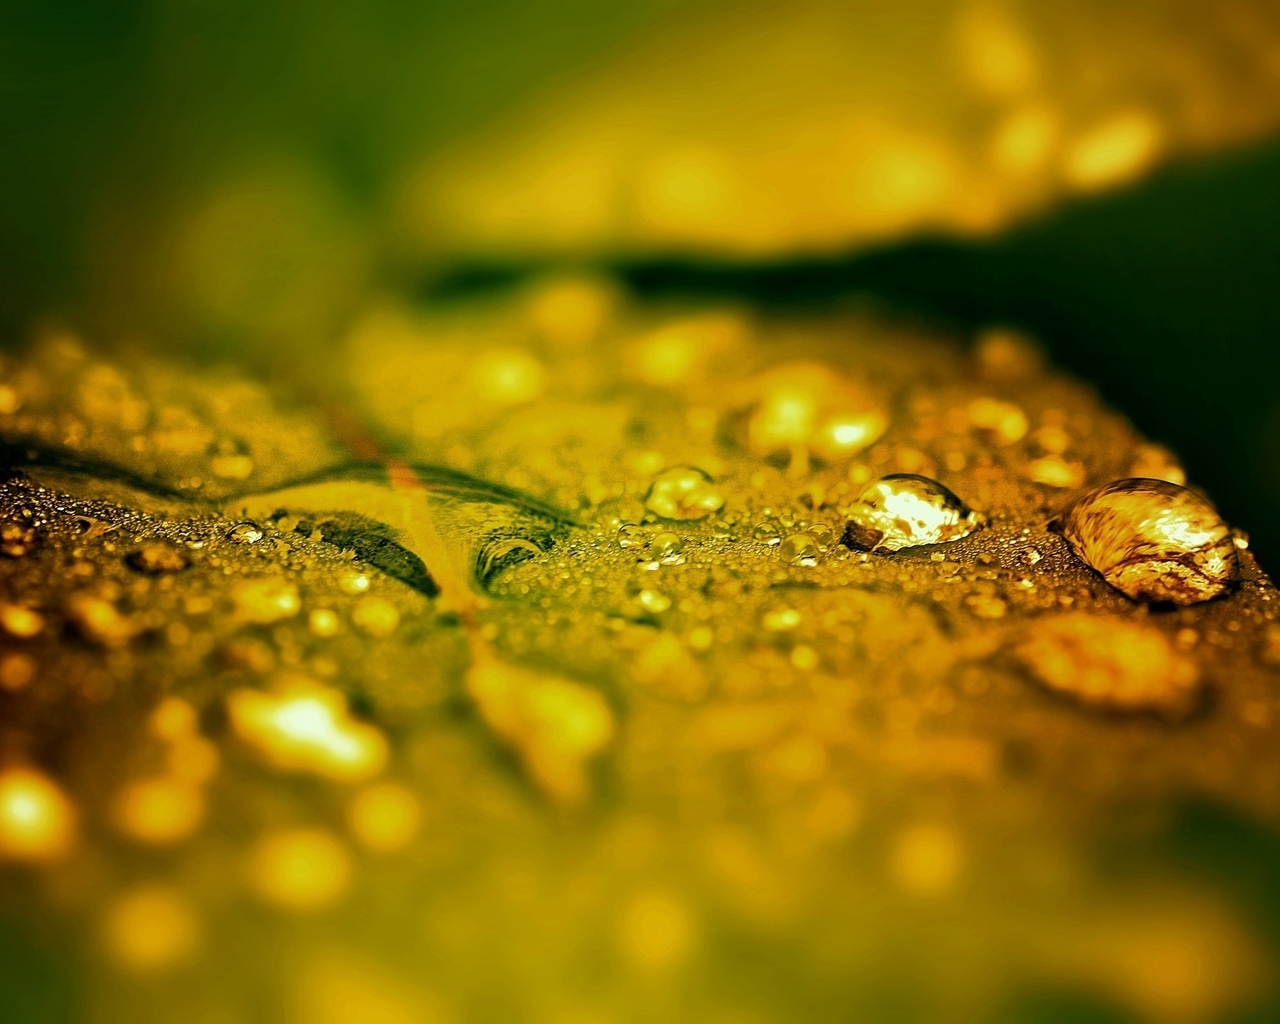 Image: Drop, leaf, focus, water